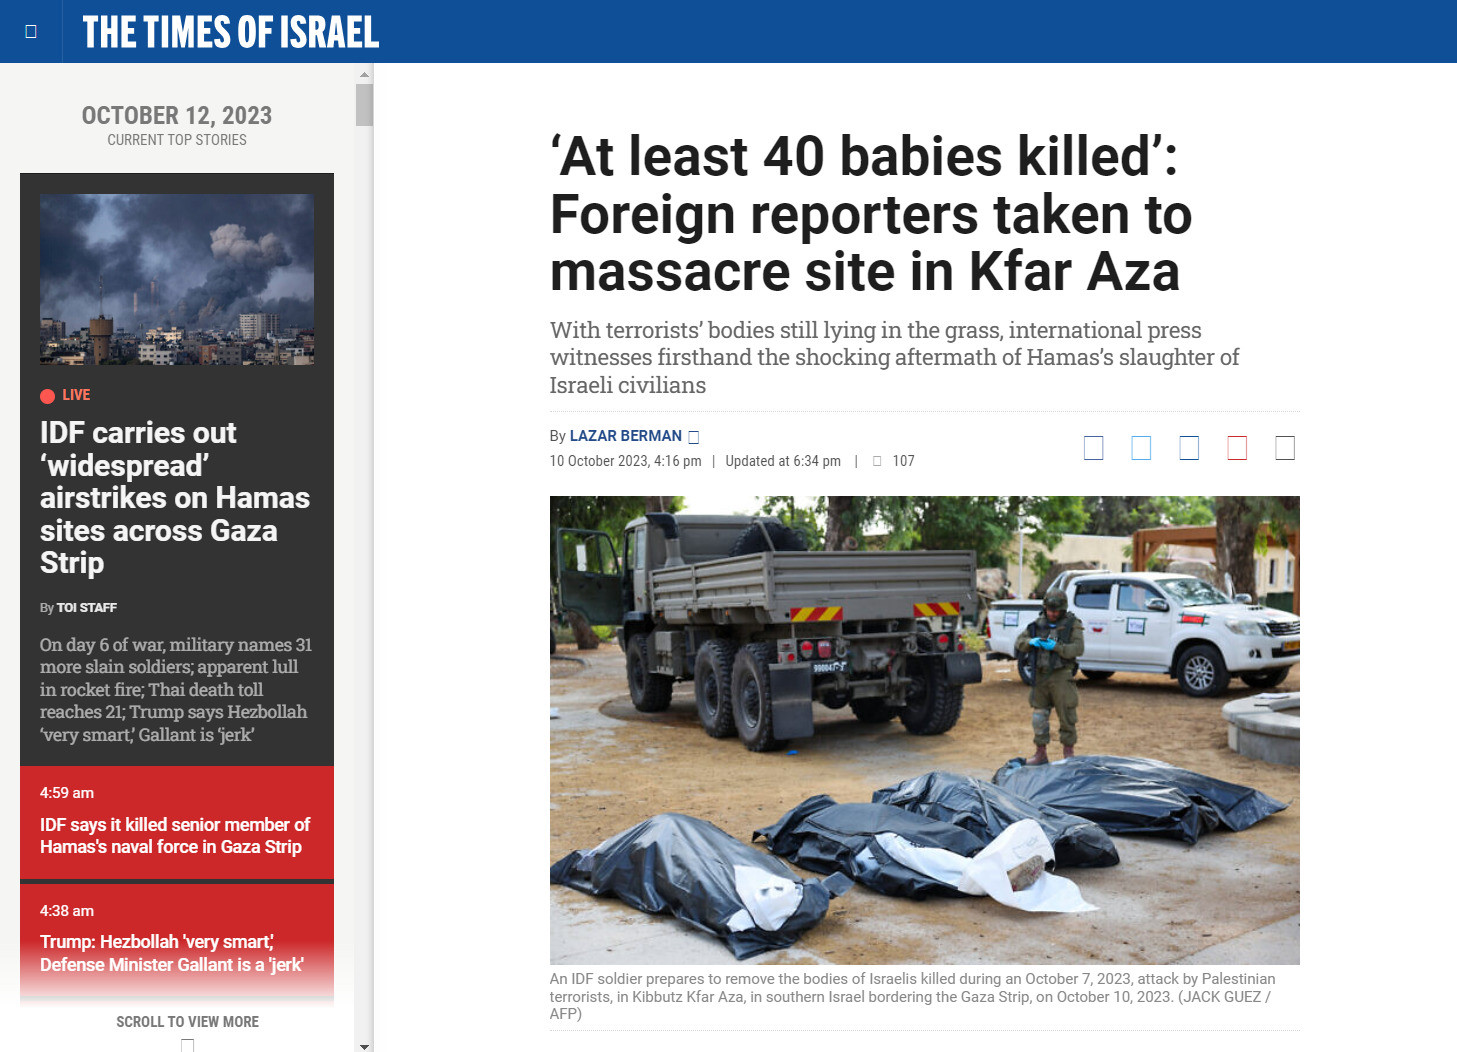 The Times Of Israel'in 10 Ekim 2023 tarihli haberi "'En az 40 bebek öldürüldü': Yabancı muhabirler Kfar Aza'daki katliam alanına götürüldü". "Sivilleri katleden bebek katili Hamas" haberleri, 7 Ekim'de başlayan İsrail saldırılarını haklı çıkarmaya yönelik atılmış "doğrulanmamış" ve "muhabiri tarafından bir askerden duydum" denilen yalan haber serileridir.